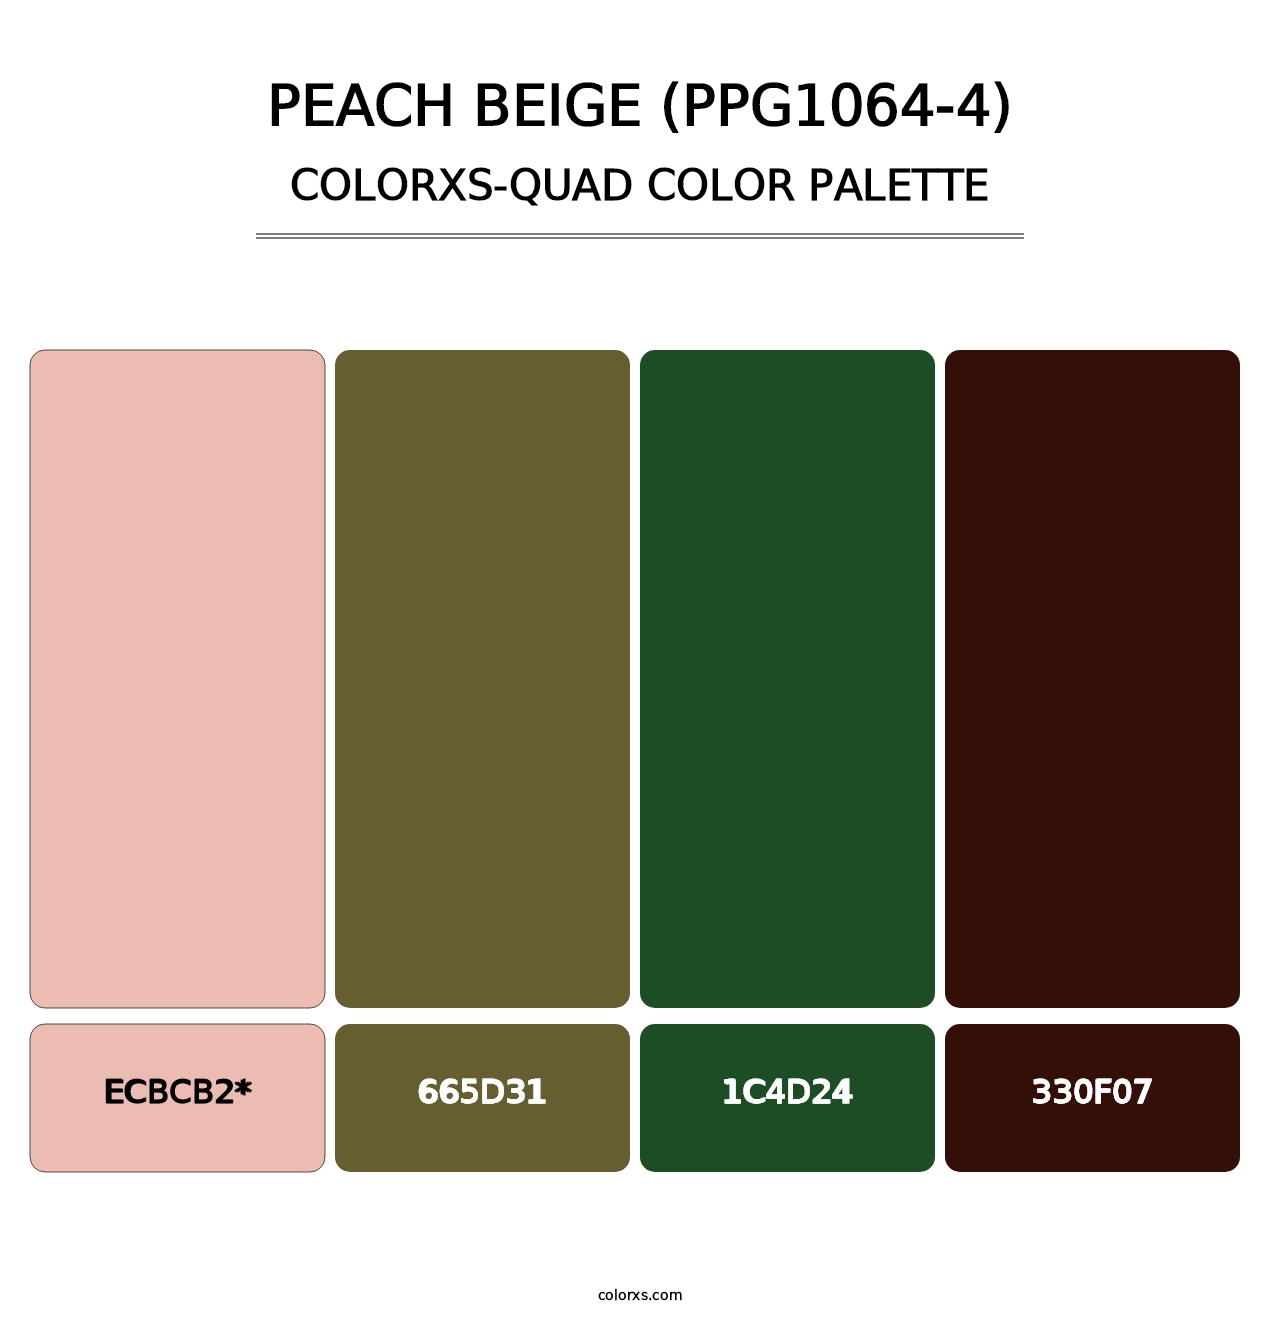 Peach Beige (PPG1064-4) - Colorxs Quad Palette